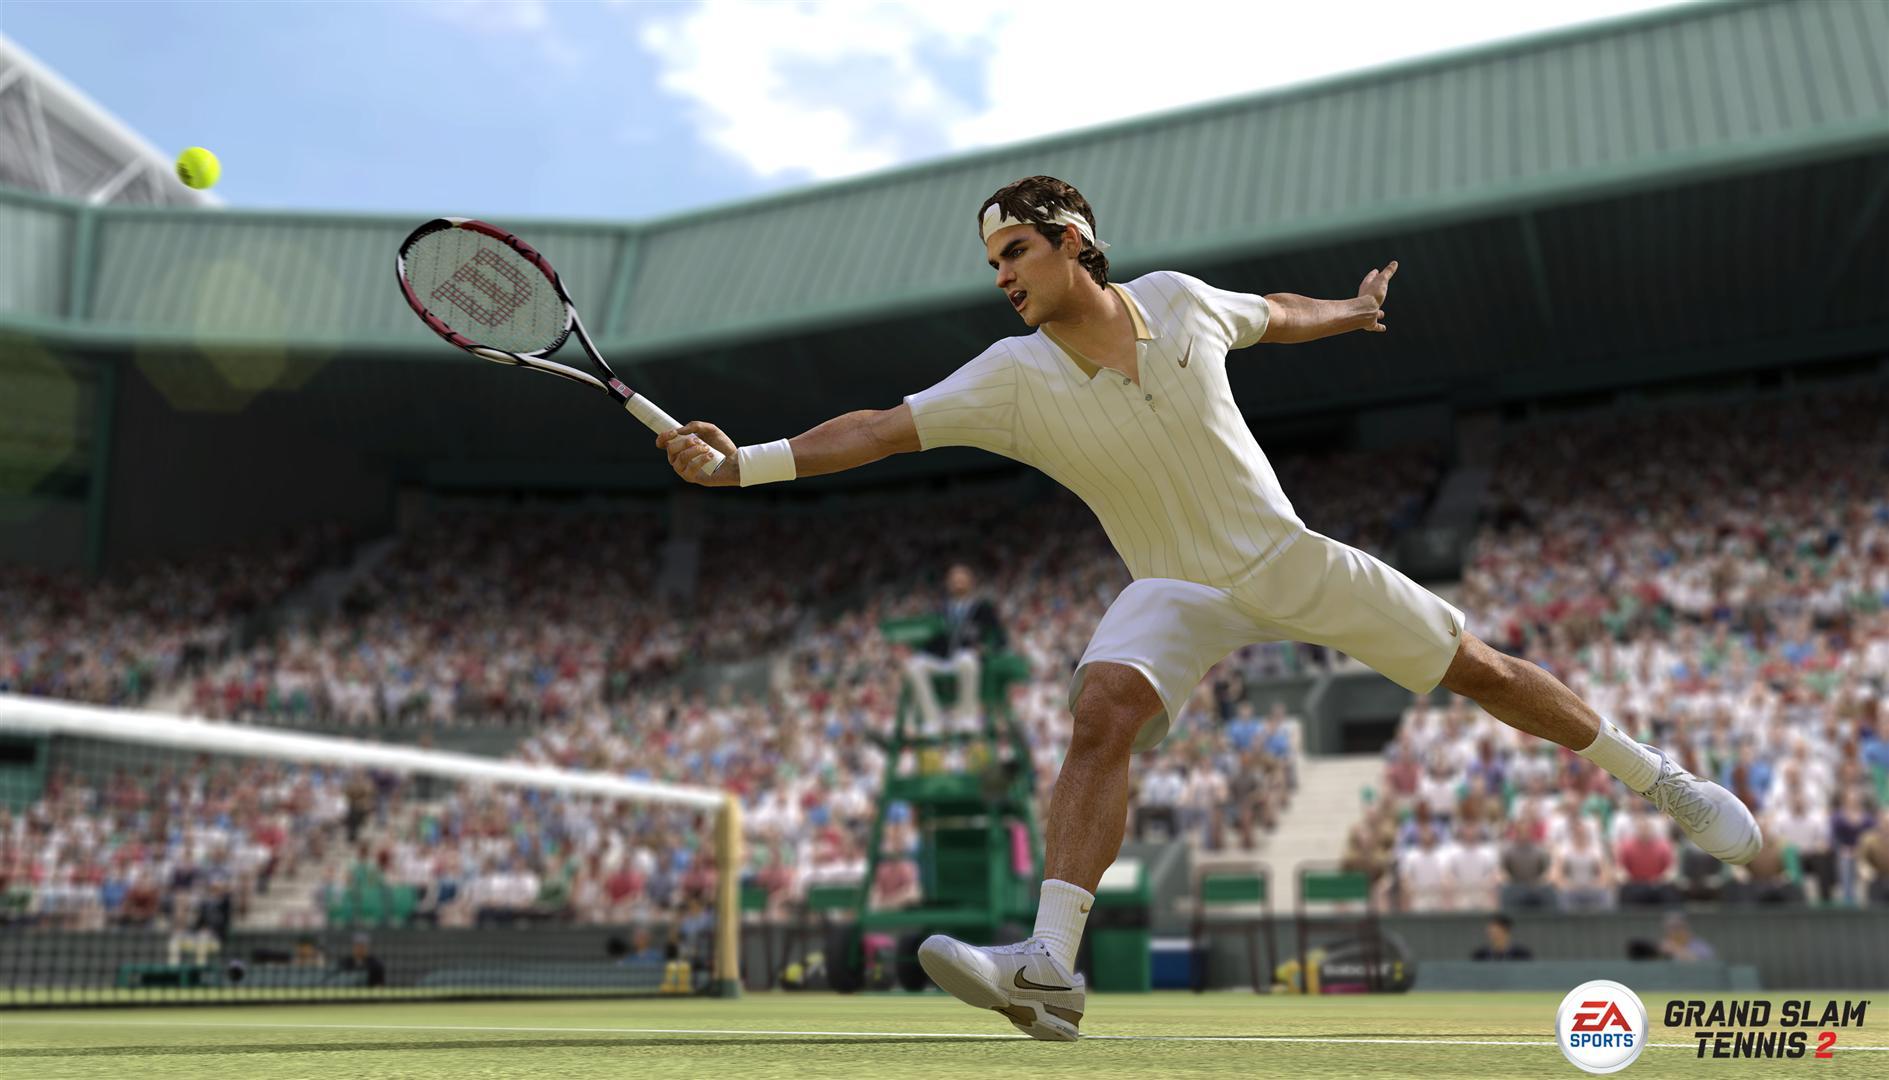 Grand Slam Tennis 2. ПС 3 теннис 2. Grand Slam Tennis ps4. Игра на Xbox 360 Grand Slam Tennis 2.